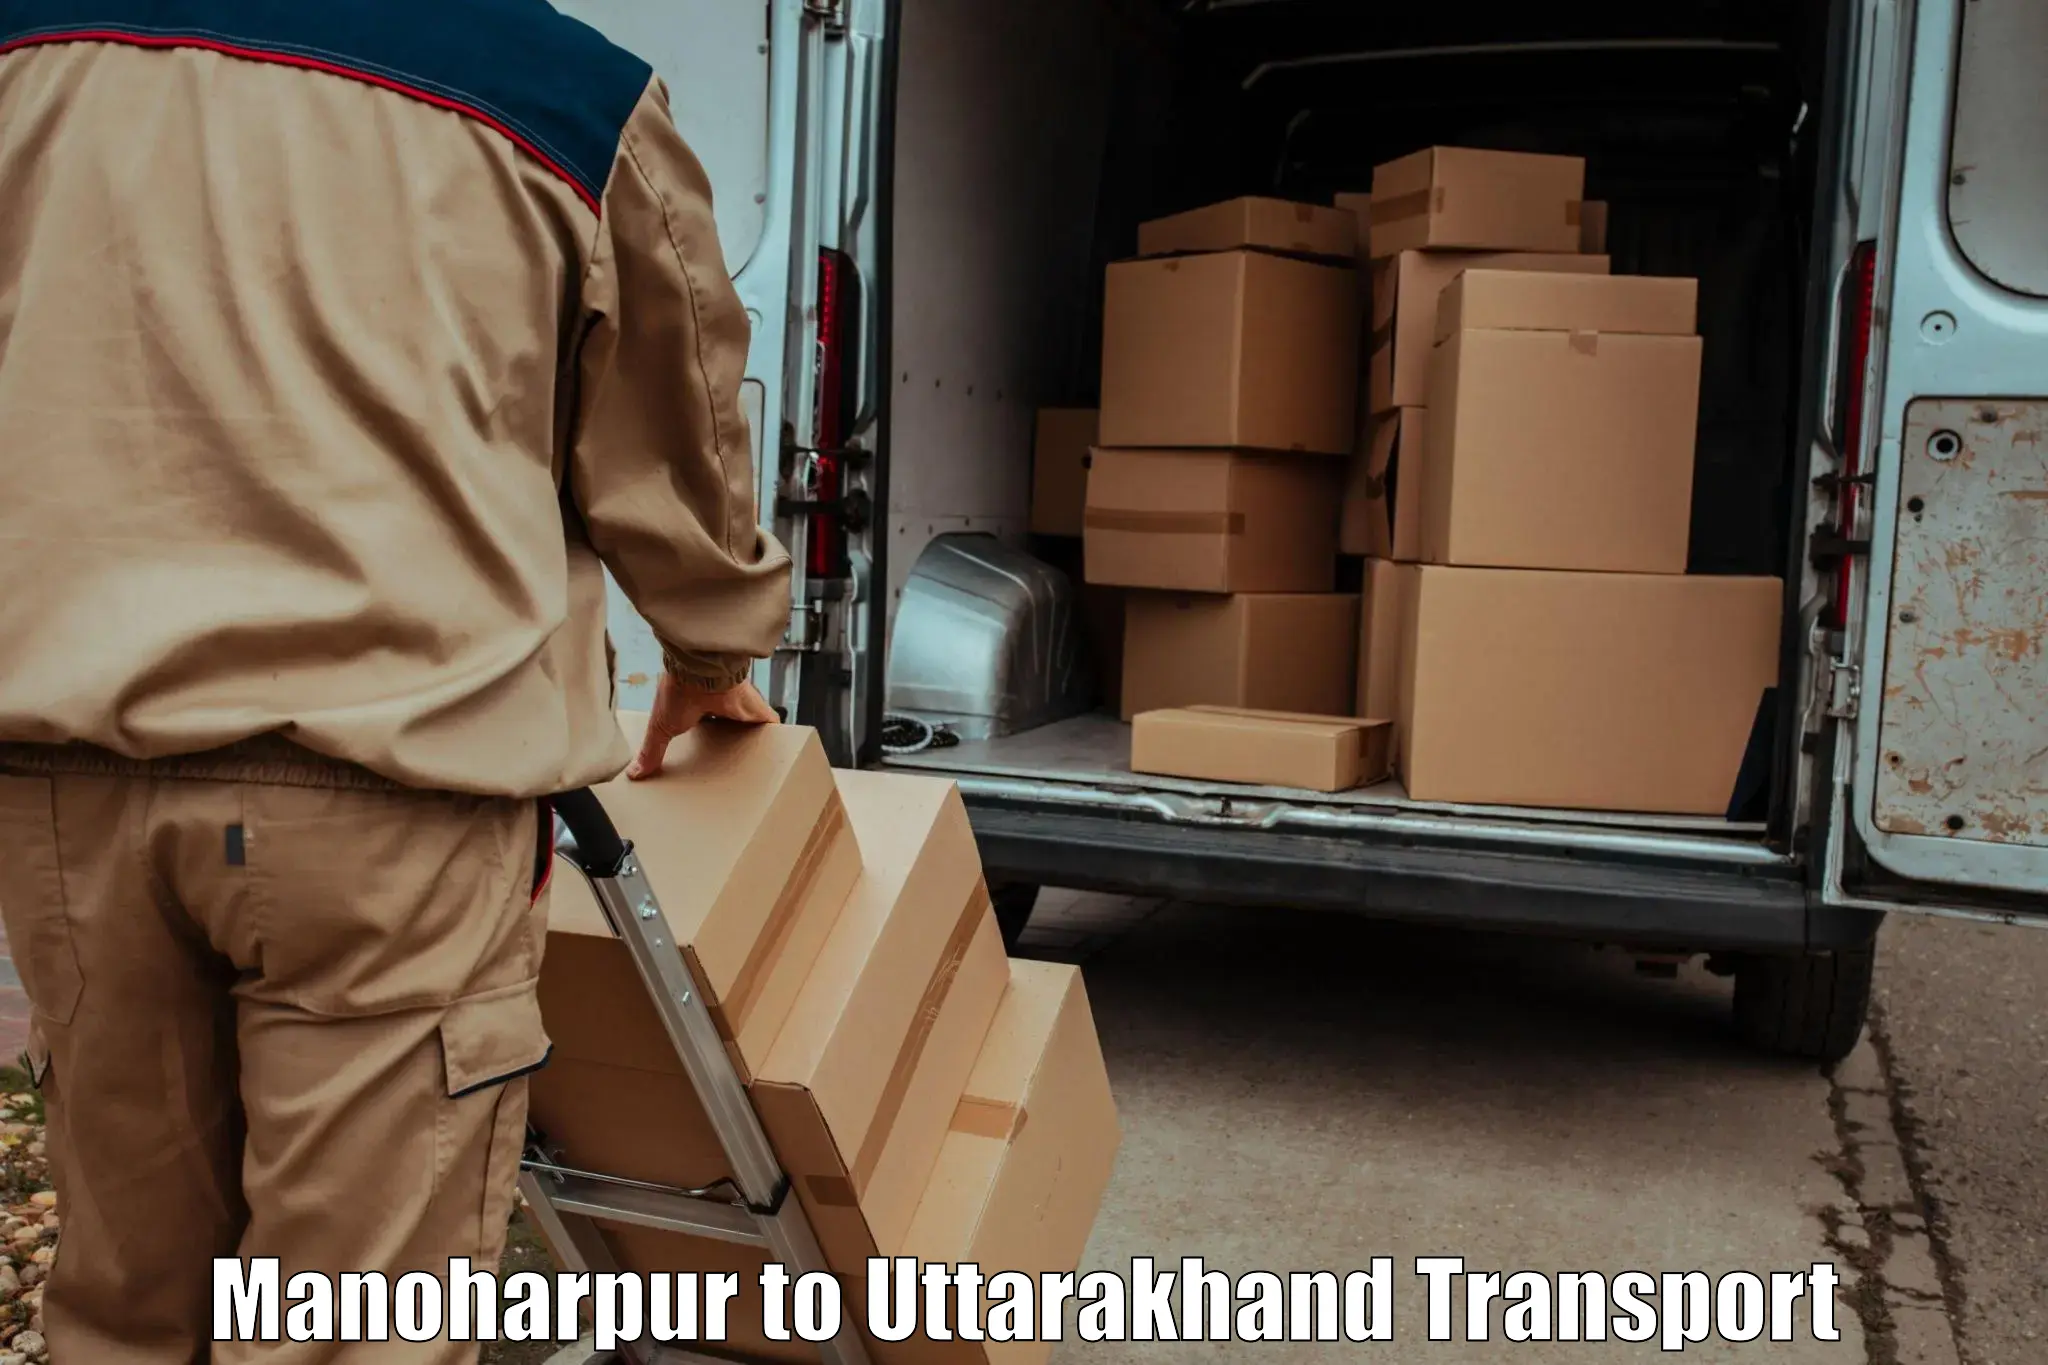 Transport shared services Manoharpur to Uttarakhand